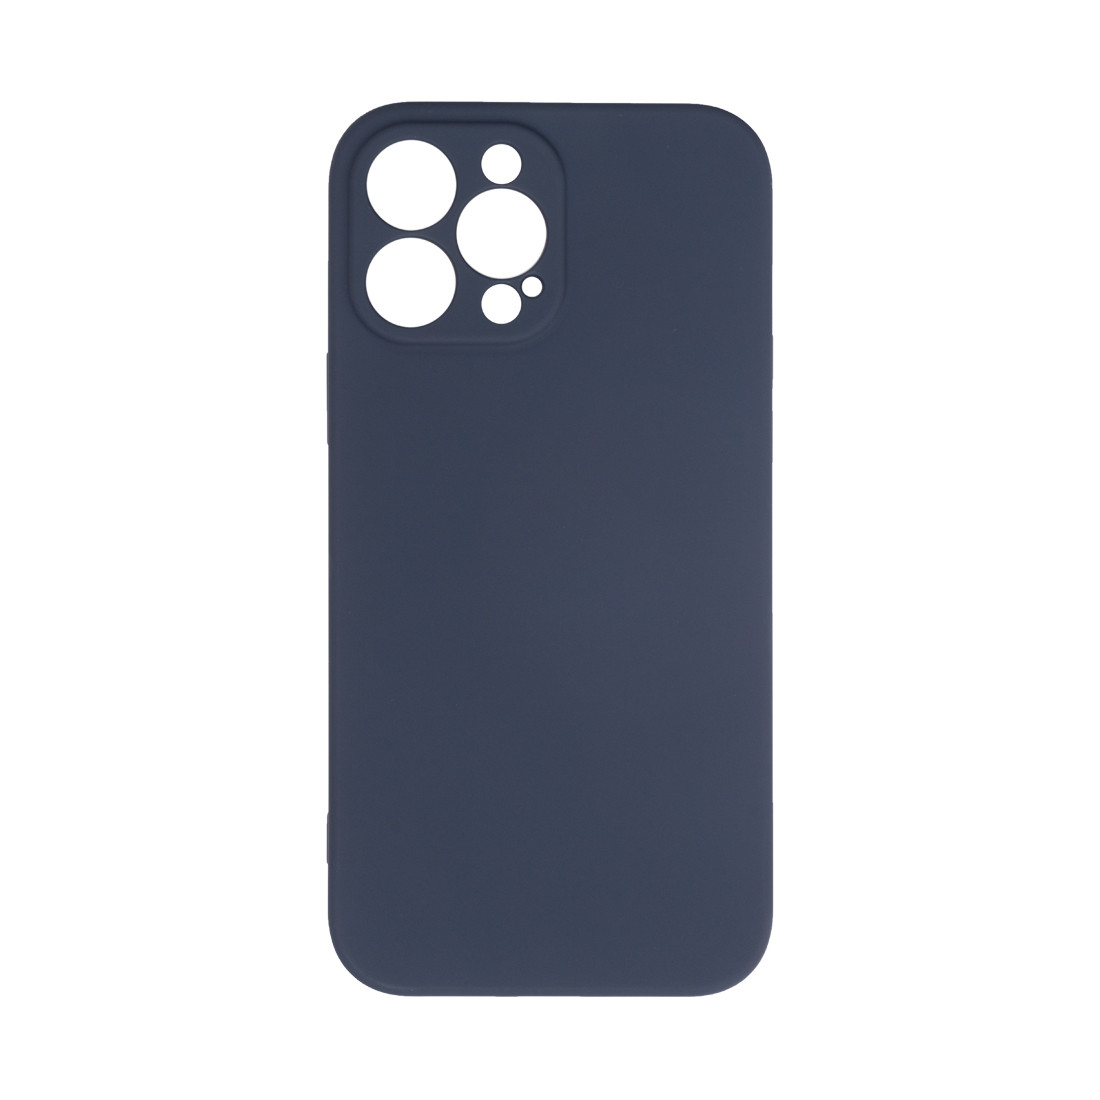 Чехол для телефона  X-Game  XG-HS87  для Iphone 13 Pro Max  Силиконовый  Сапфир  Пол. пакет